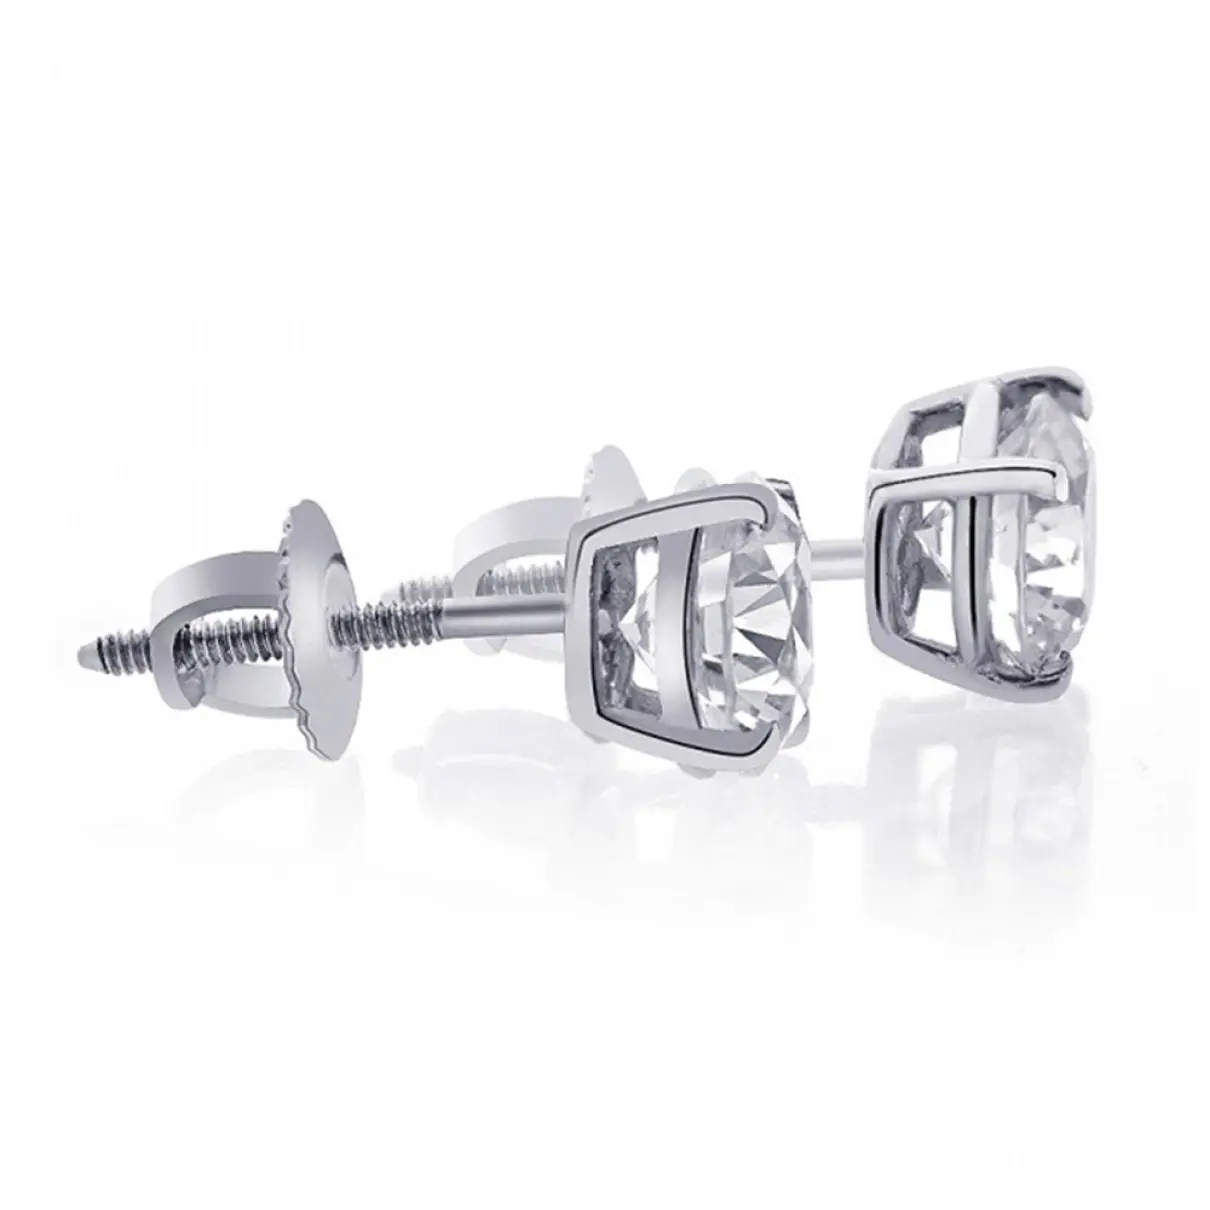 Buy Avital & Co Jewelry White gold earrings online